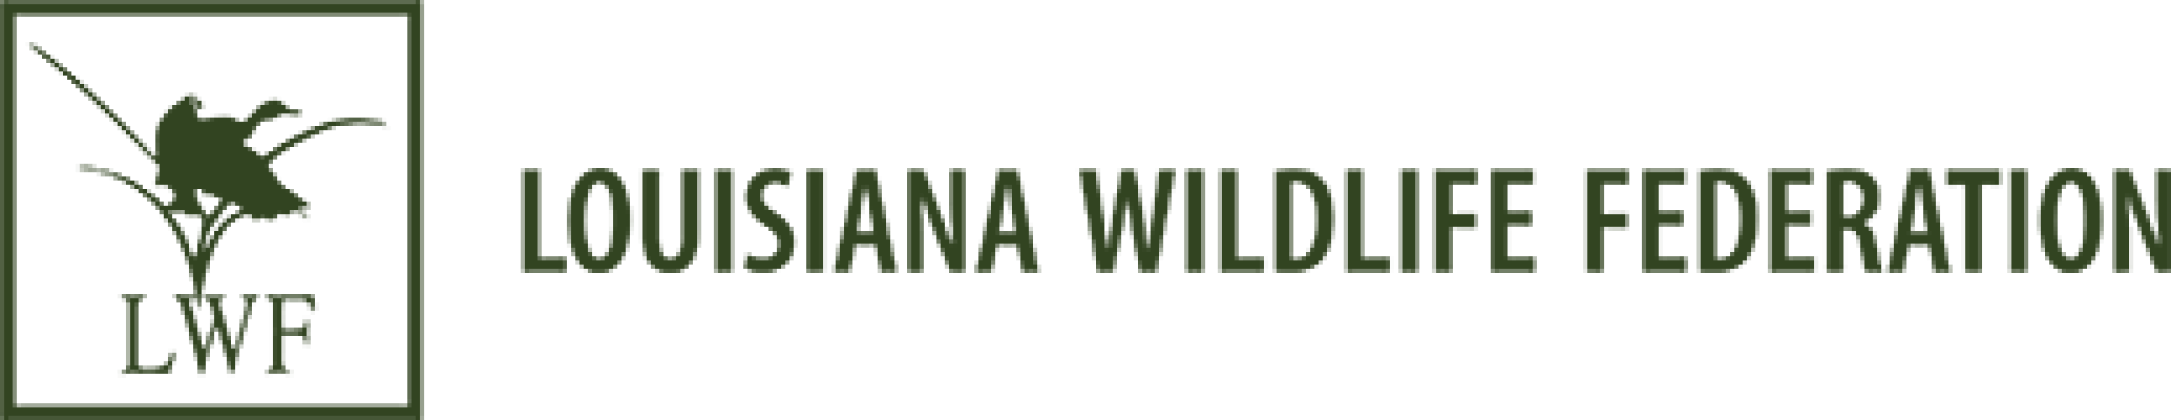 Louisiana Wildlife Federation 